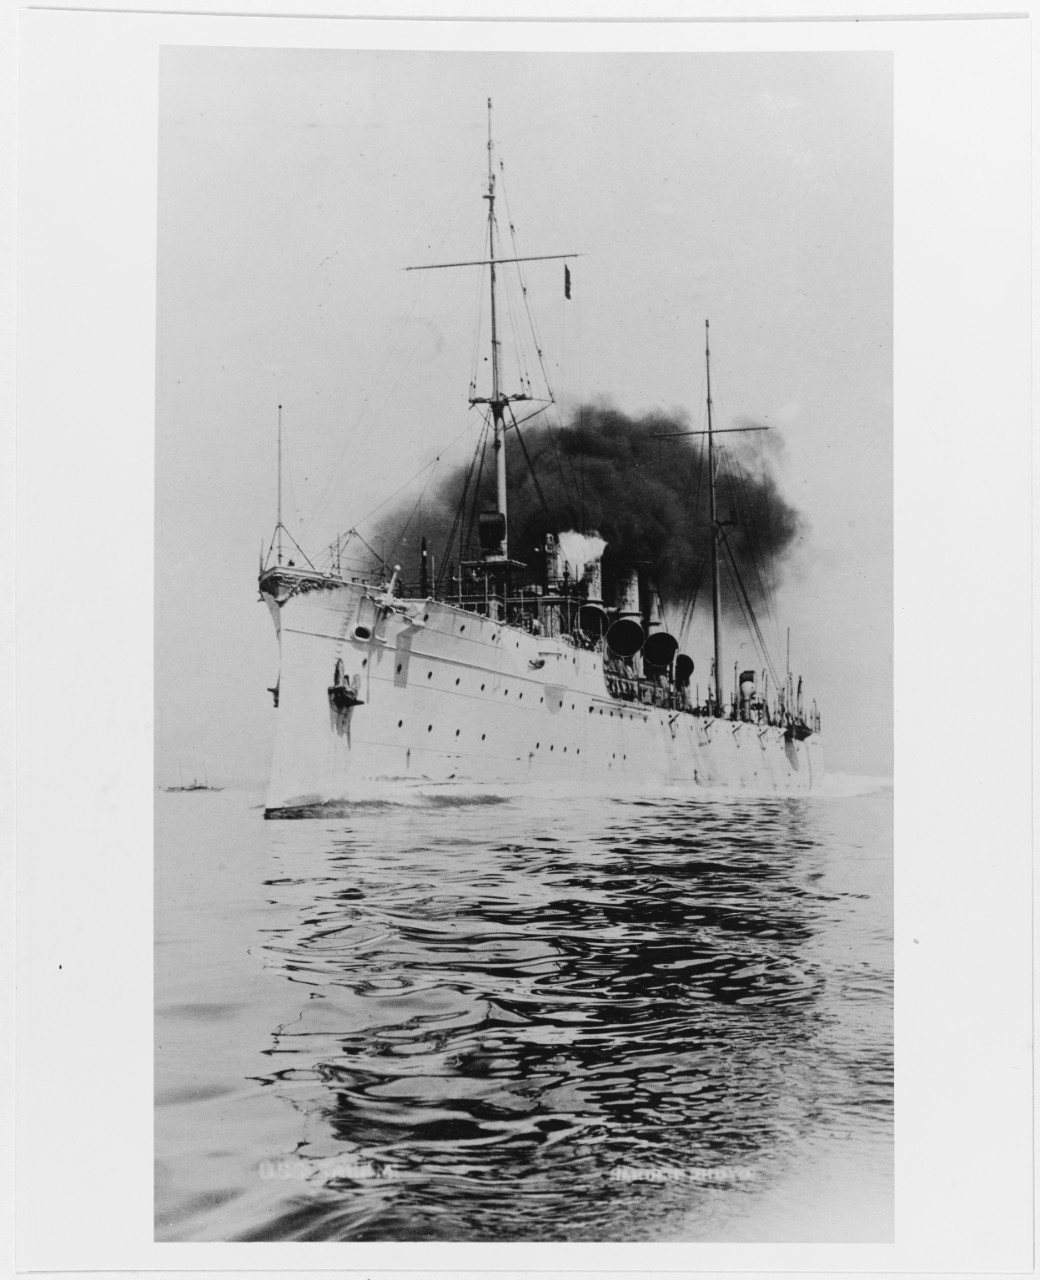 Details about  / 1//700 COMBRIG 70098 Cruiser USS CL-3 Salem 1908